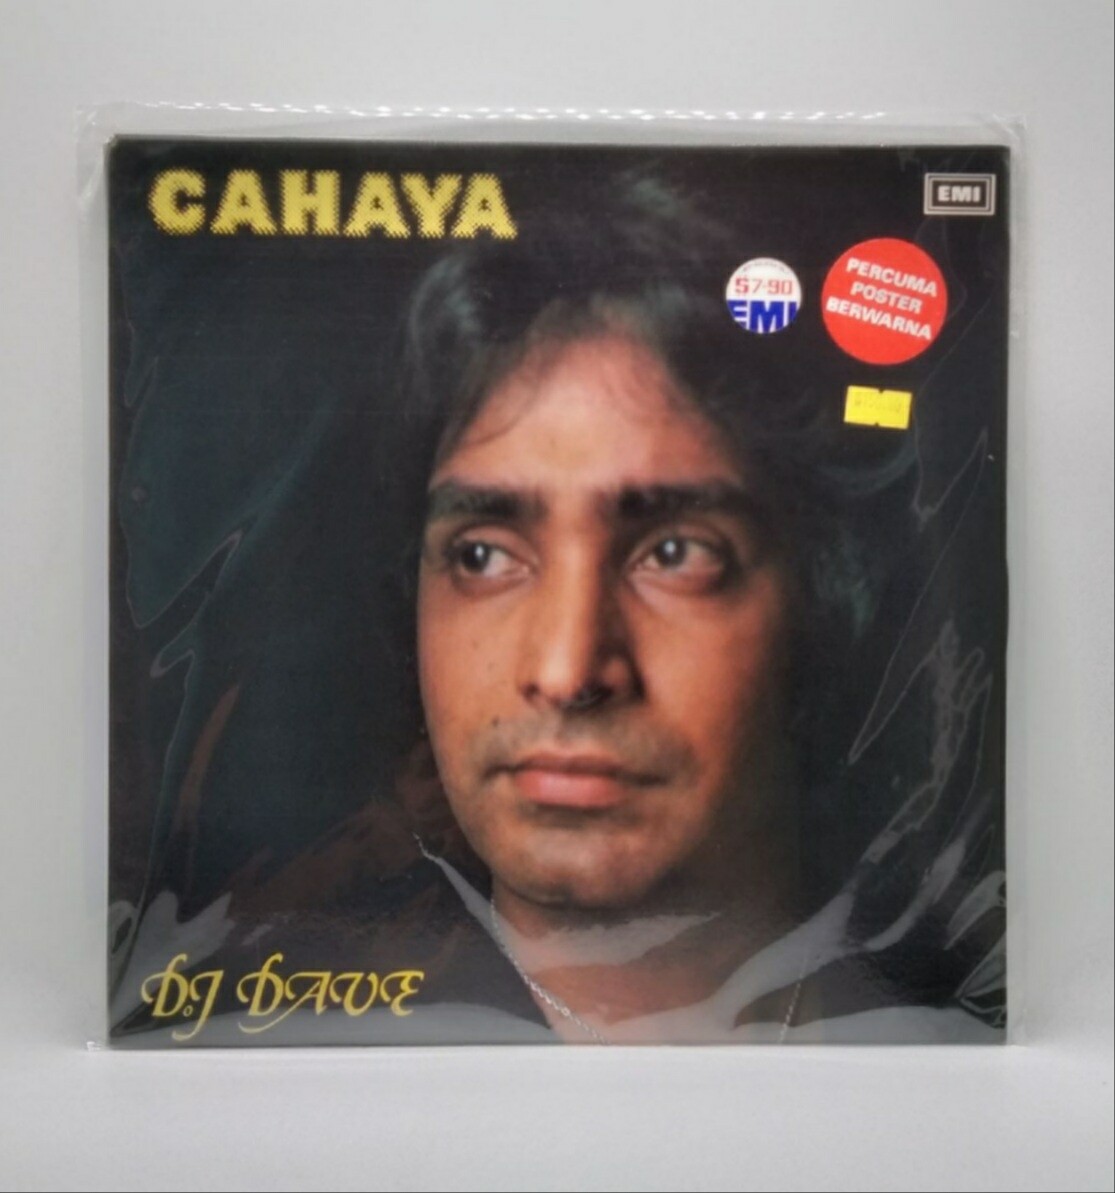 [USED] DJ DAVE -CAHAYA- LP